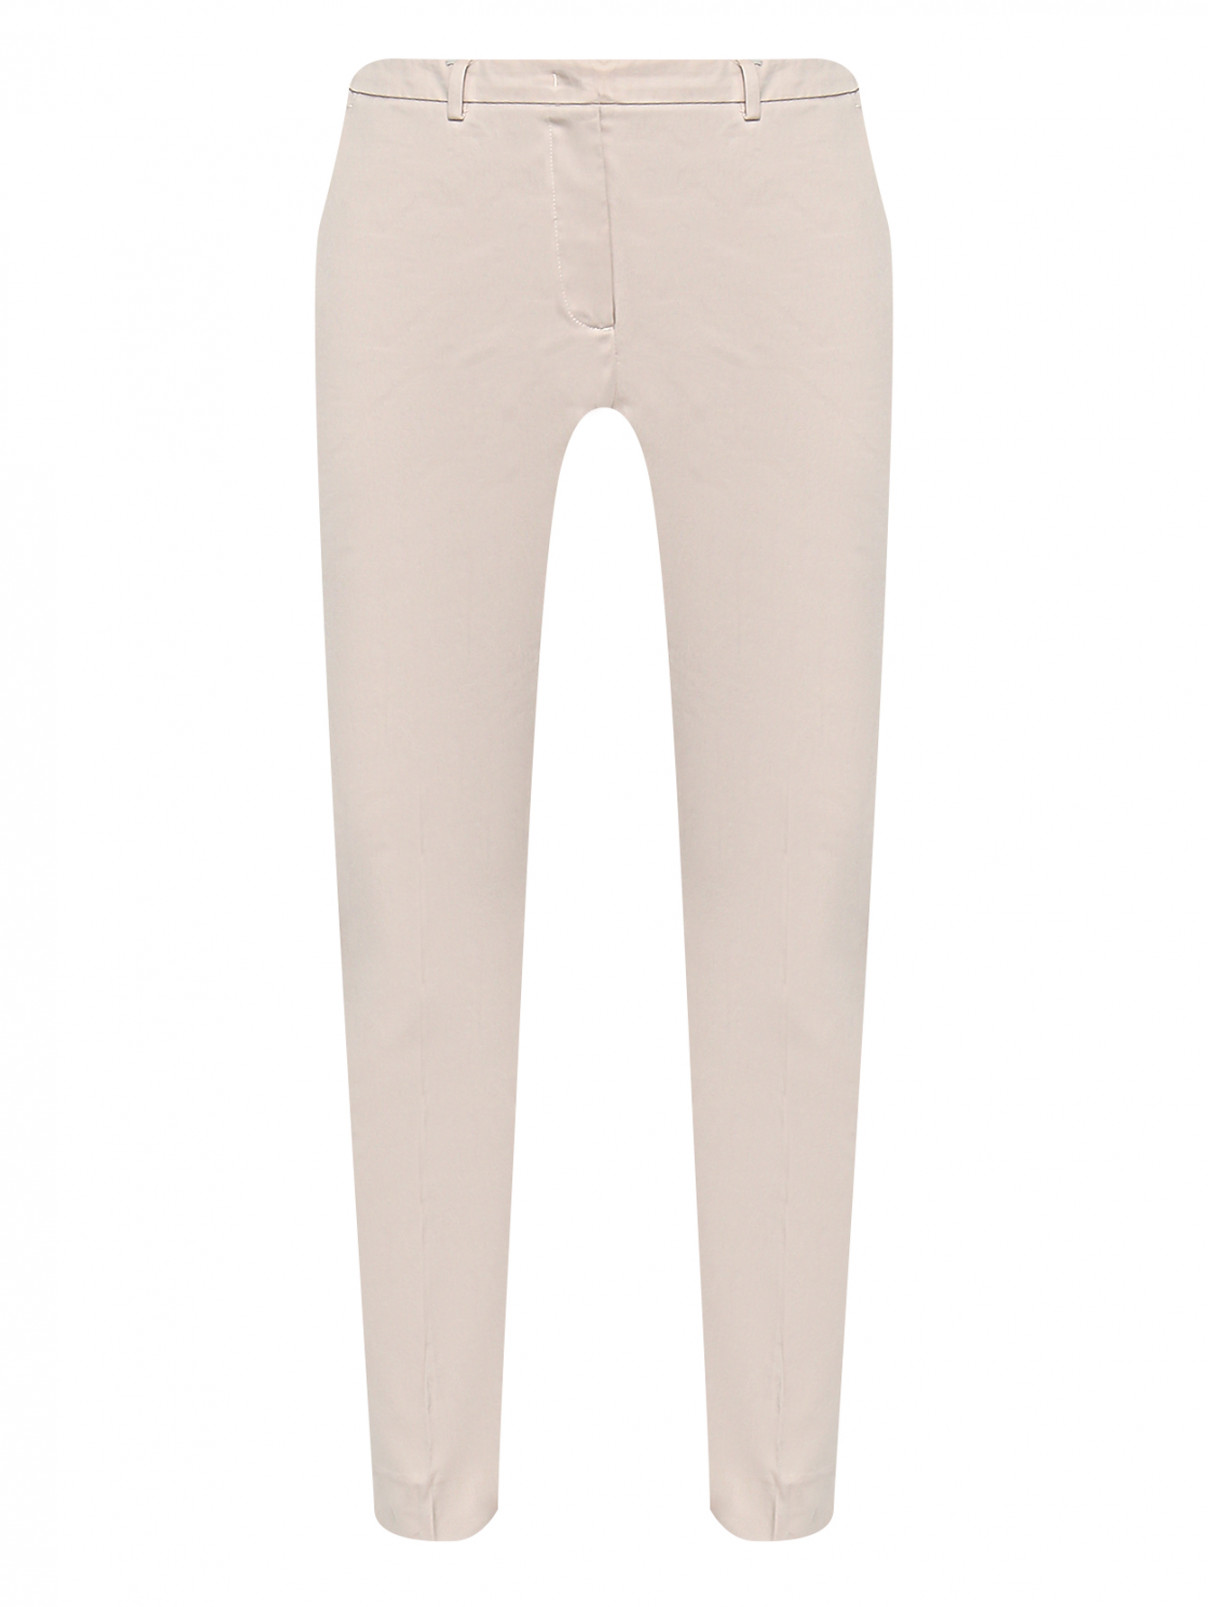 Укороченные брюки из хлопка с карманами Seventy  –  Общий вид  – Цвет:  Бежевый